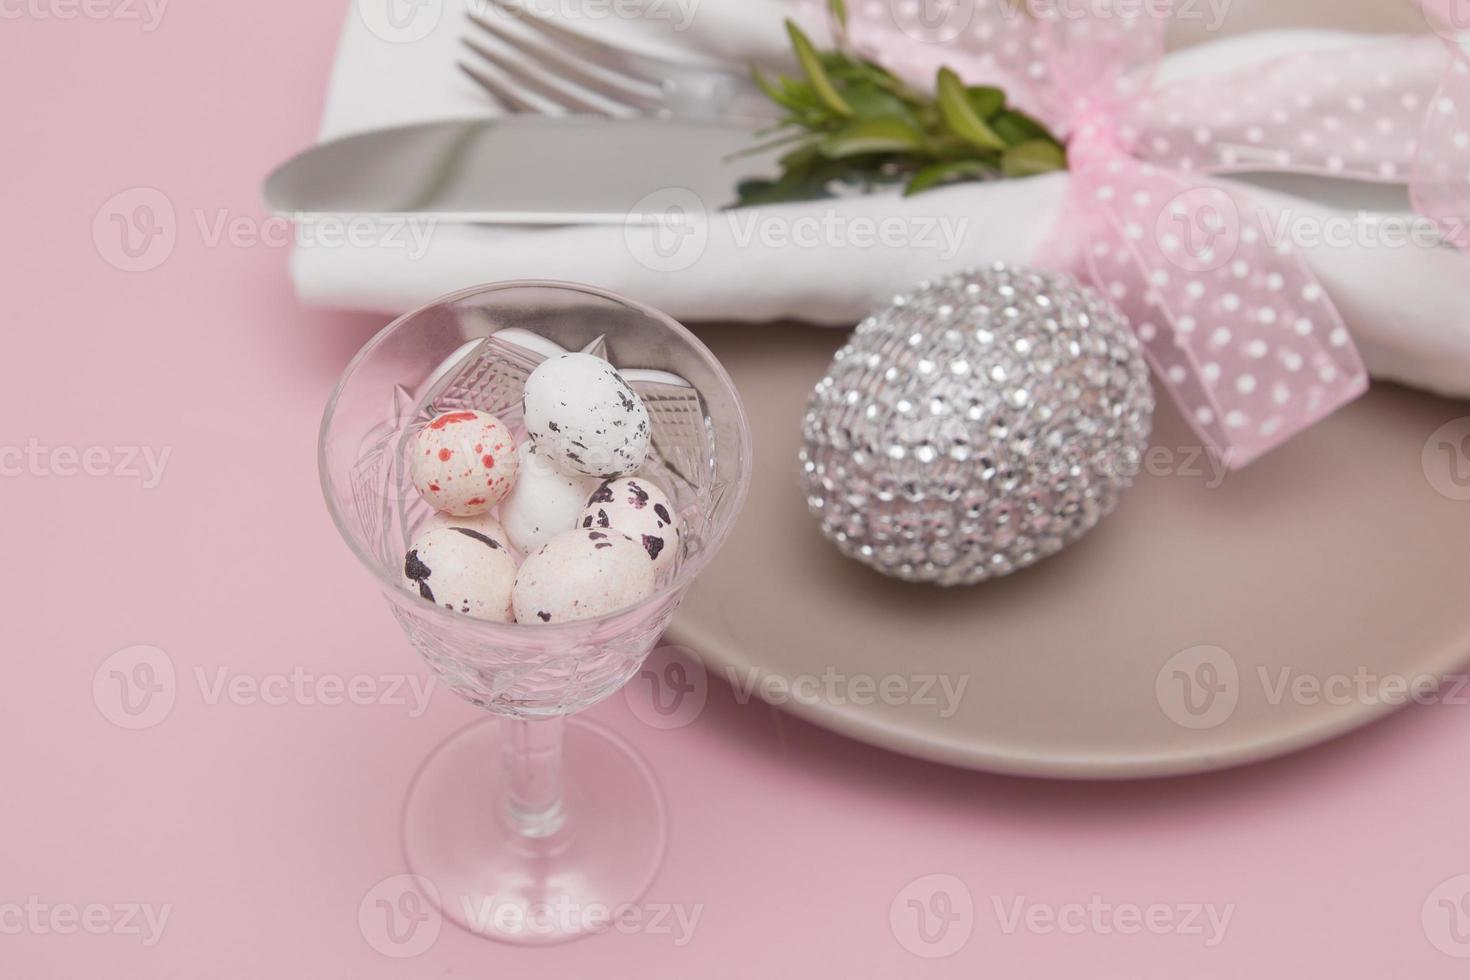 vidrio con huevos de pascua en el fondo de platos y cubiertos. enfoque variable foto